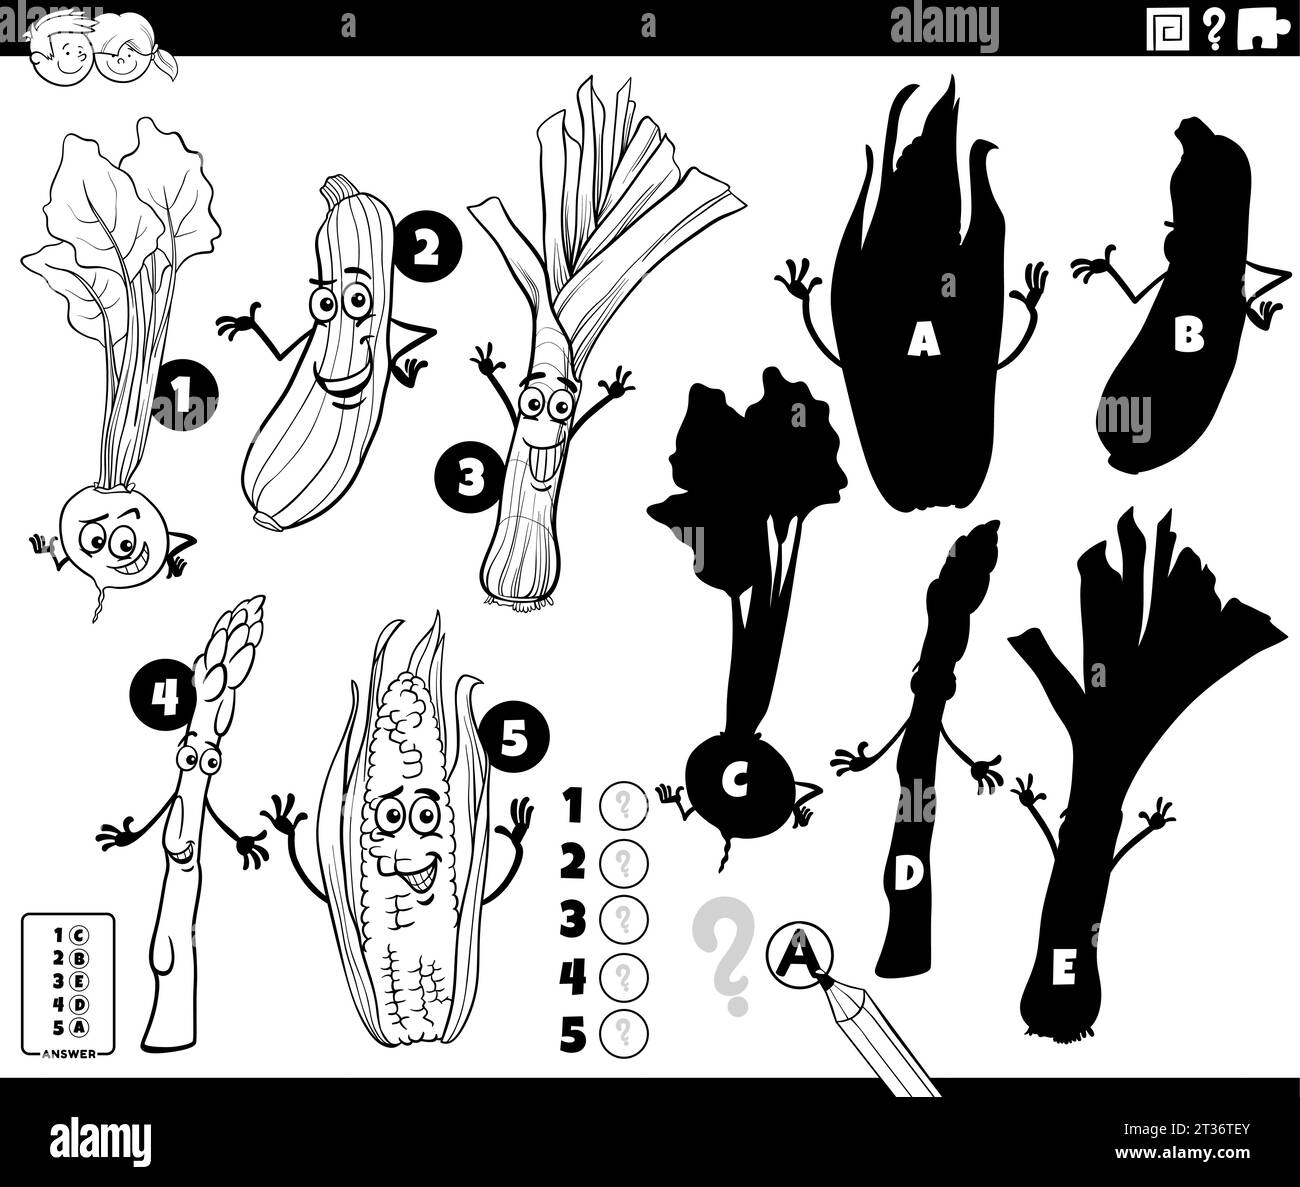 Illustrazione di cartoni animati in bianco e nero che mostra come trovare le ombre giuste per il gioco educativo delle immagini con la pagina da colorare dei personaggi comici vegetali Illustrazione Vettoriale